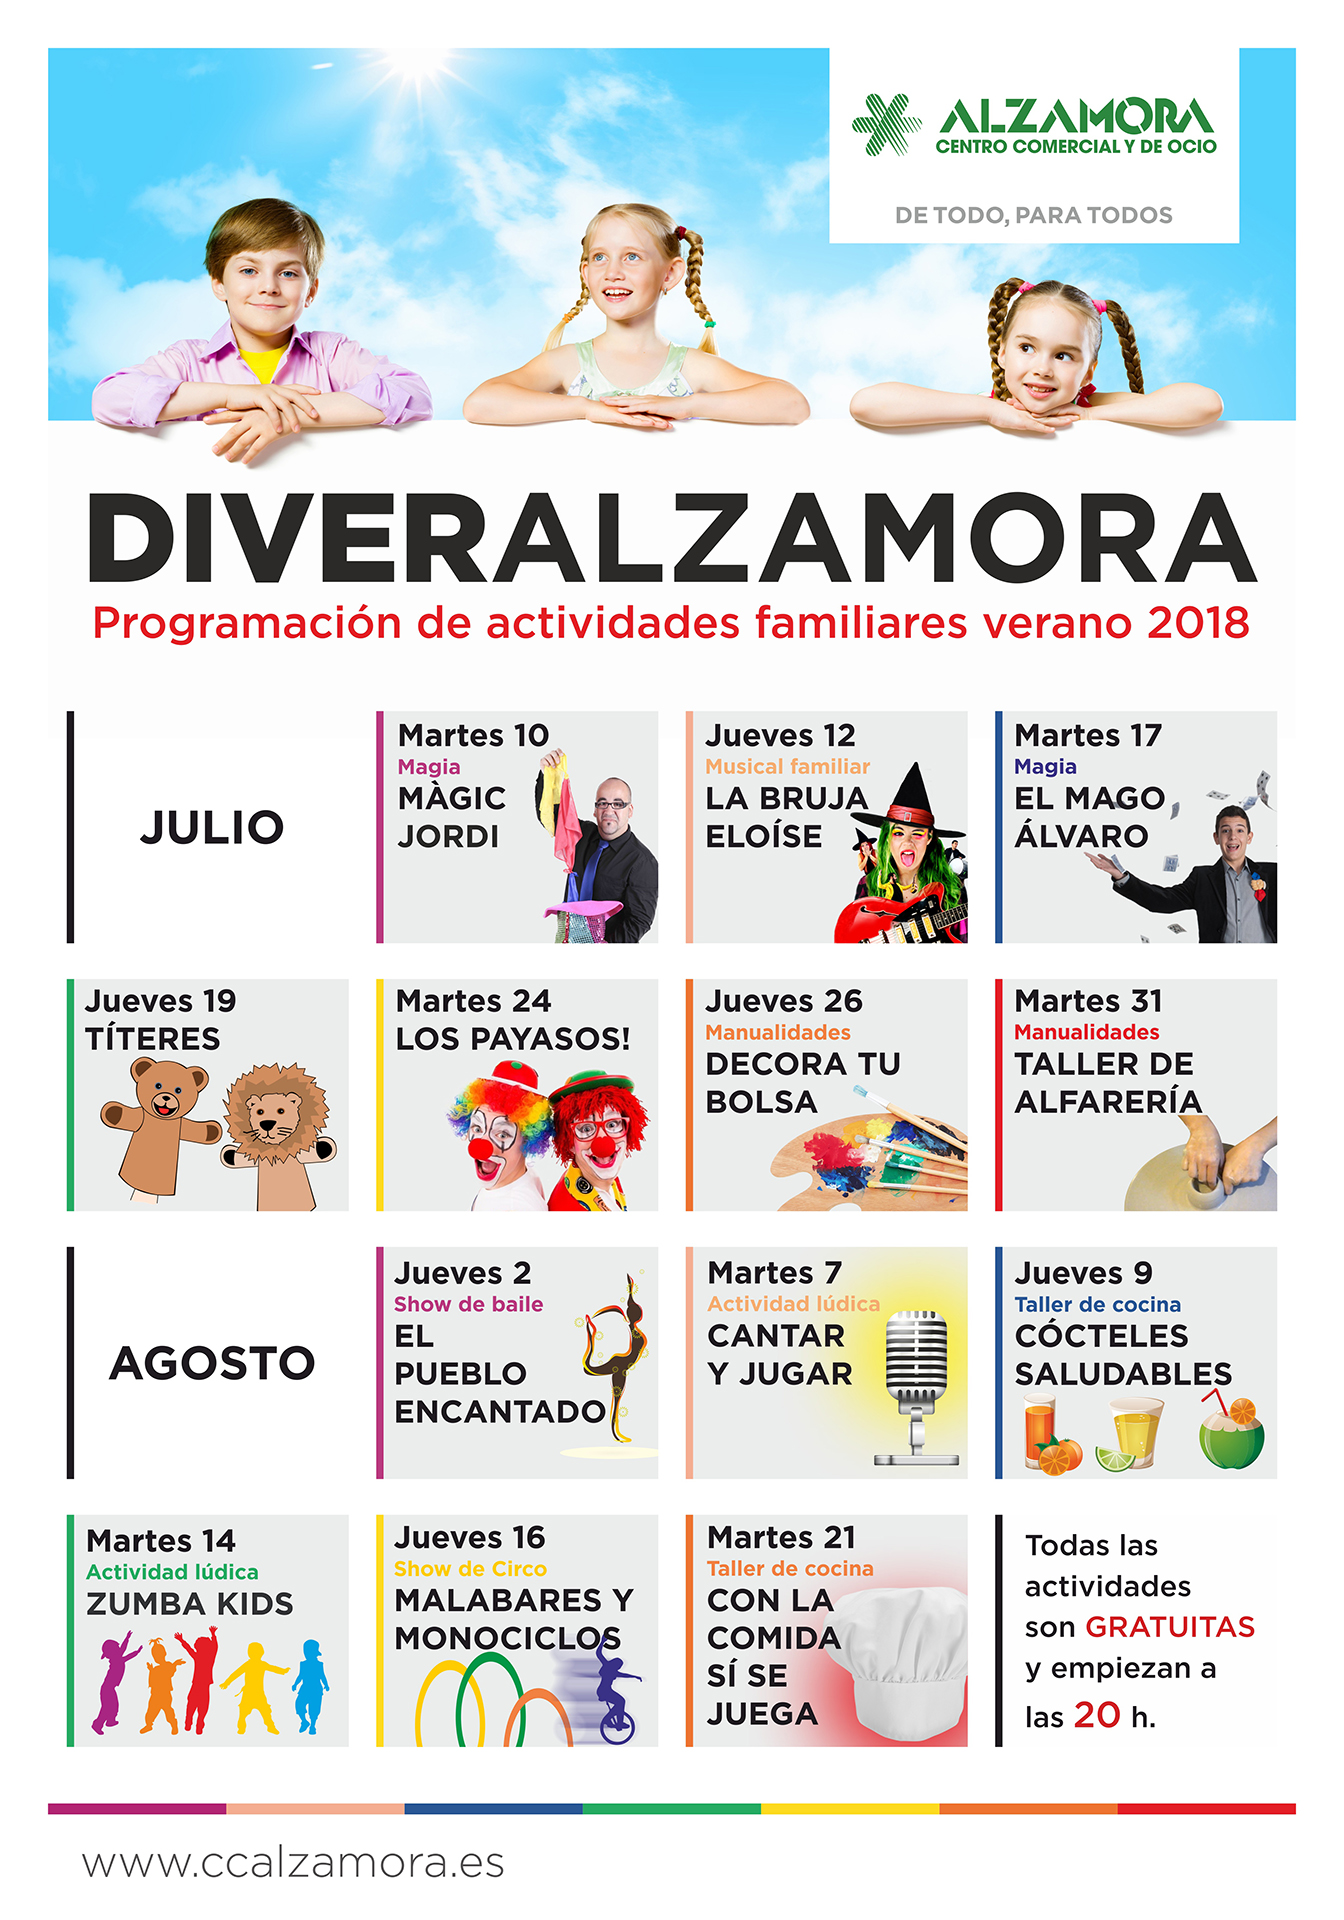 DiverAlzamora - Centro Comercial Alzamora